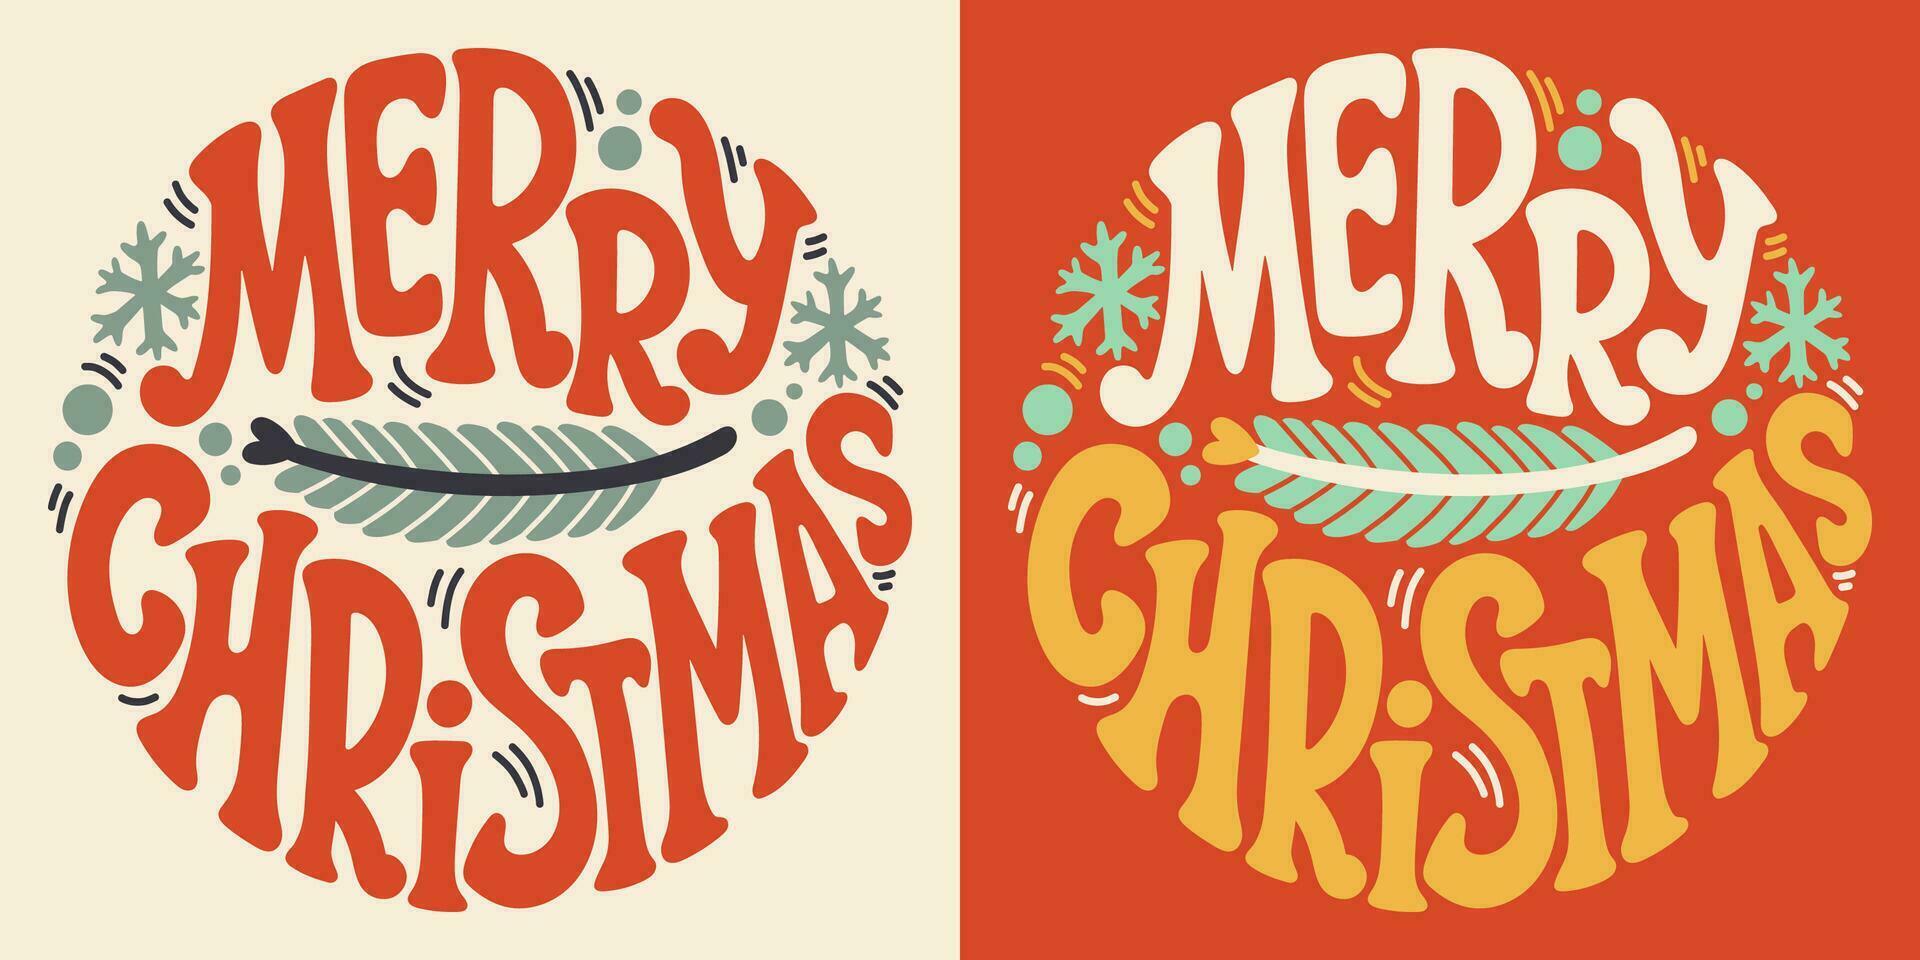 häftig text glad jul. retro slogan i runda form. trendig häftig skriva ut design för affischer, kort, tshirts i stil 60-tal, 70-tal. vektor illustration.